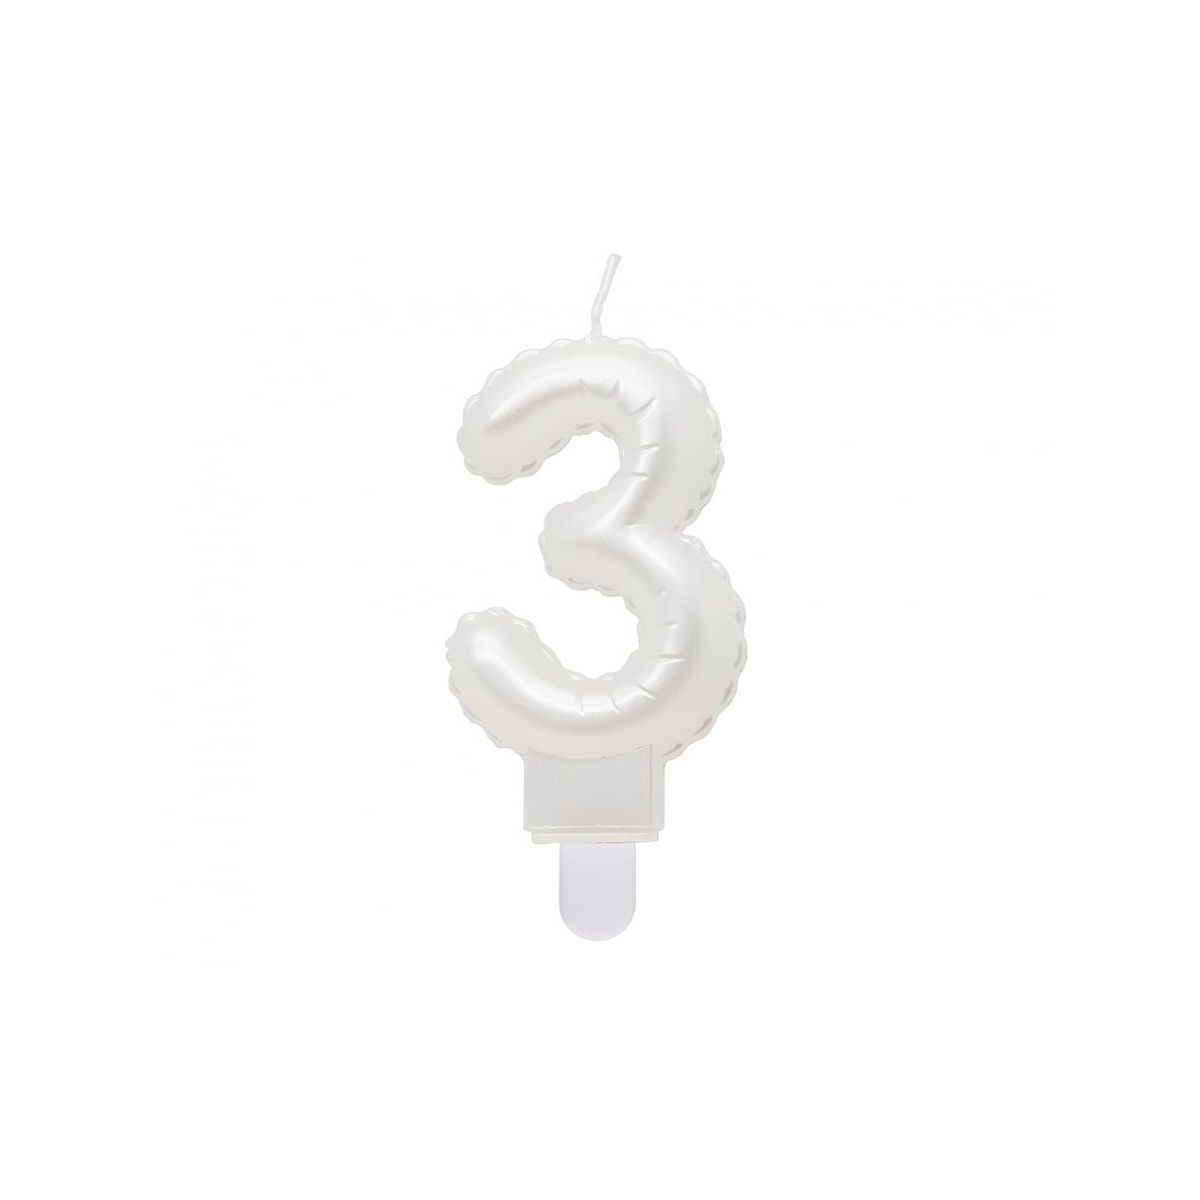 Świeczka urodzinowa cyferka 3, perłowa biała, 7 cm Godan (SF-PBI3)